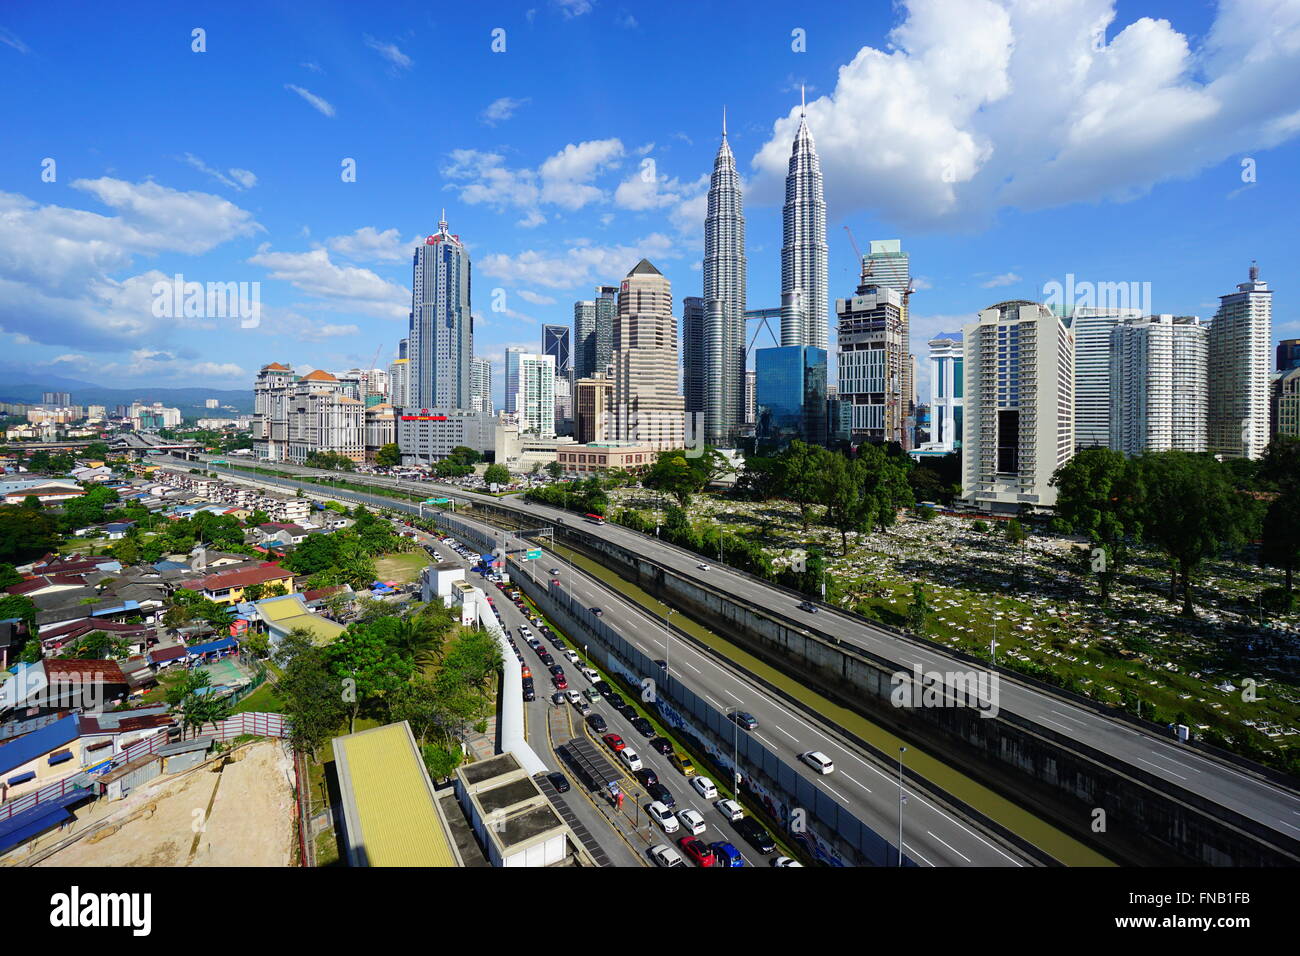 City skyline Kuala Lumpur, Malaysia Stock Photo